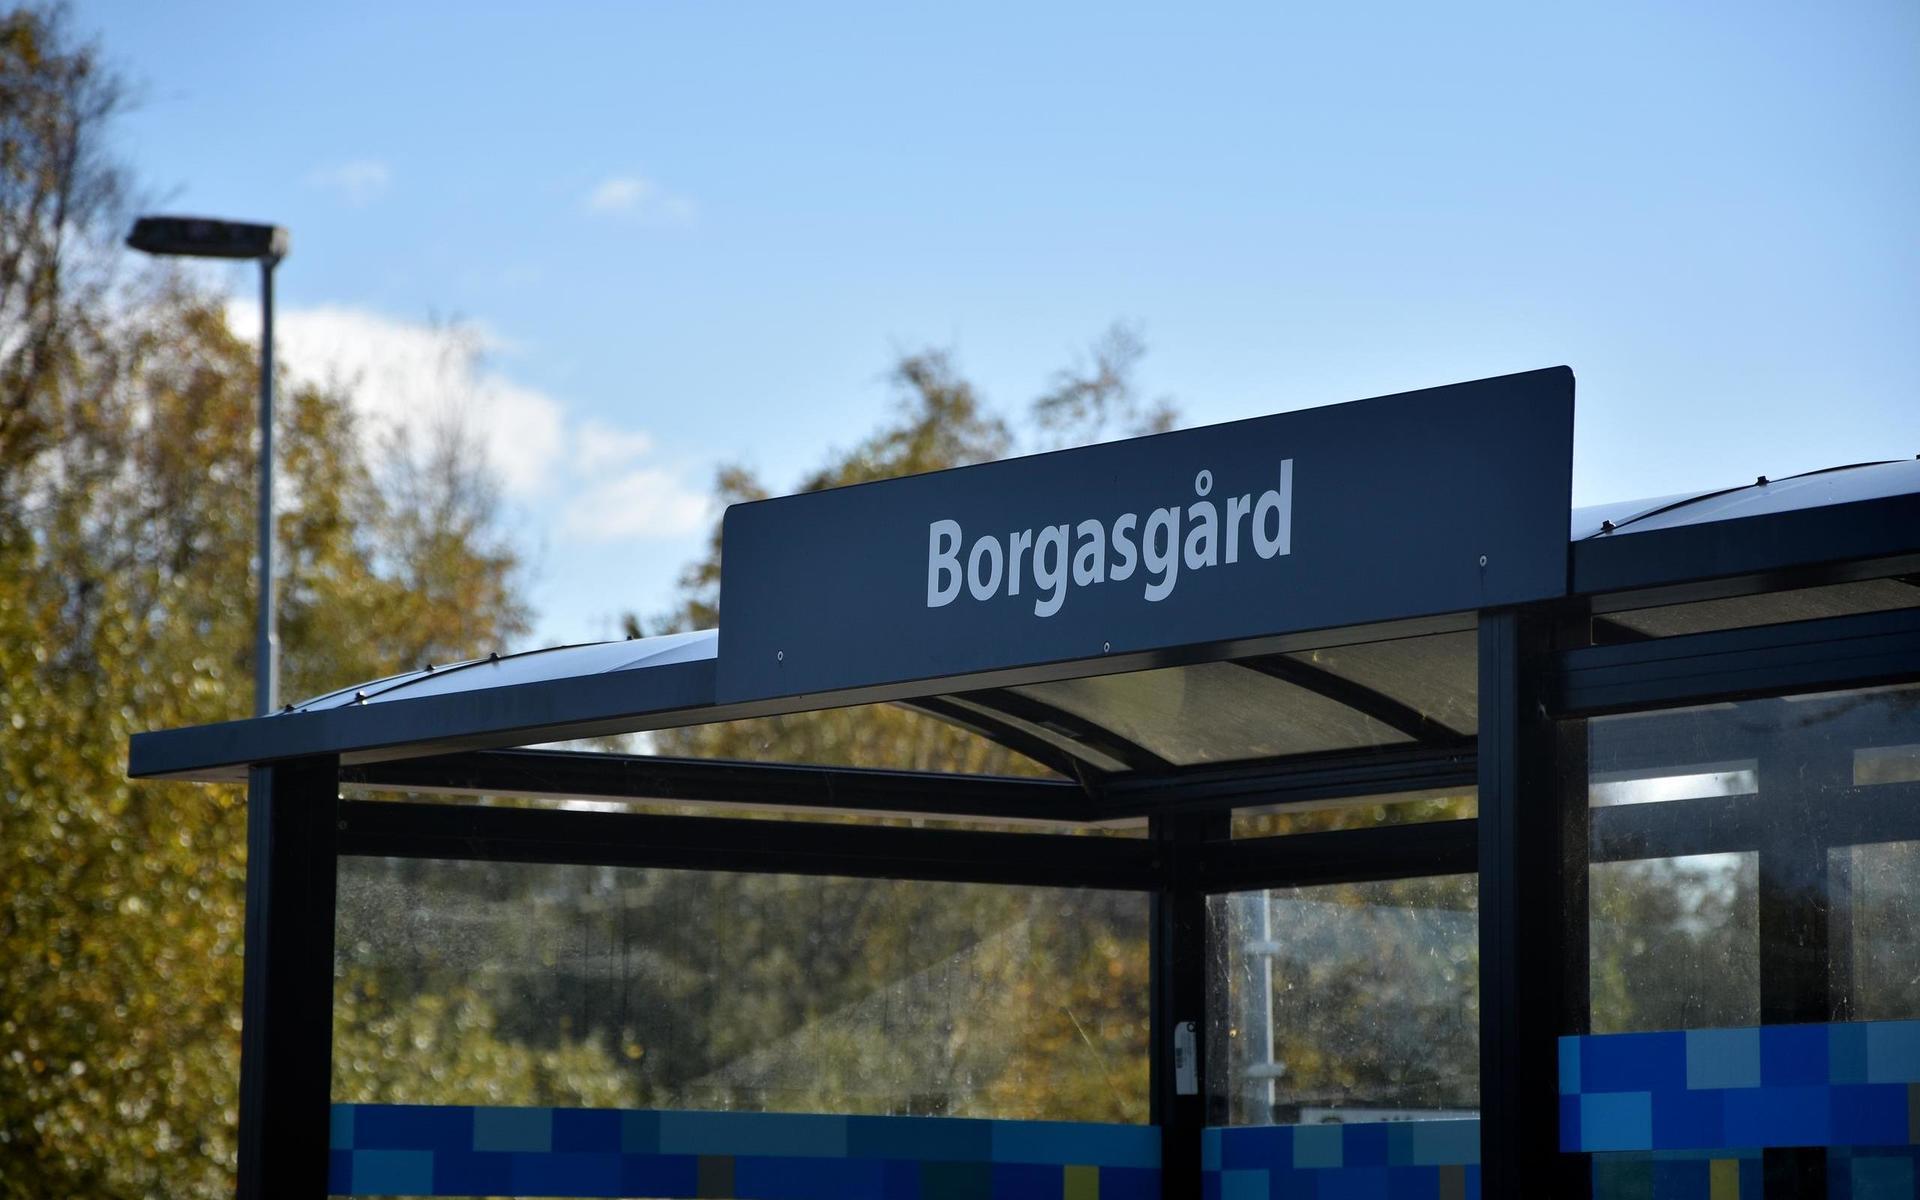 En ny förskola med plats för 160 barn ska byggas på Borgasgård i Träslöv. Budget för bygget är inte bestämd. I budgetförslaget är förskolan placerad i plan för 2023 och 2024.